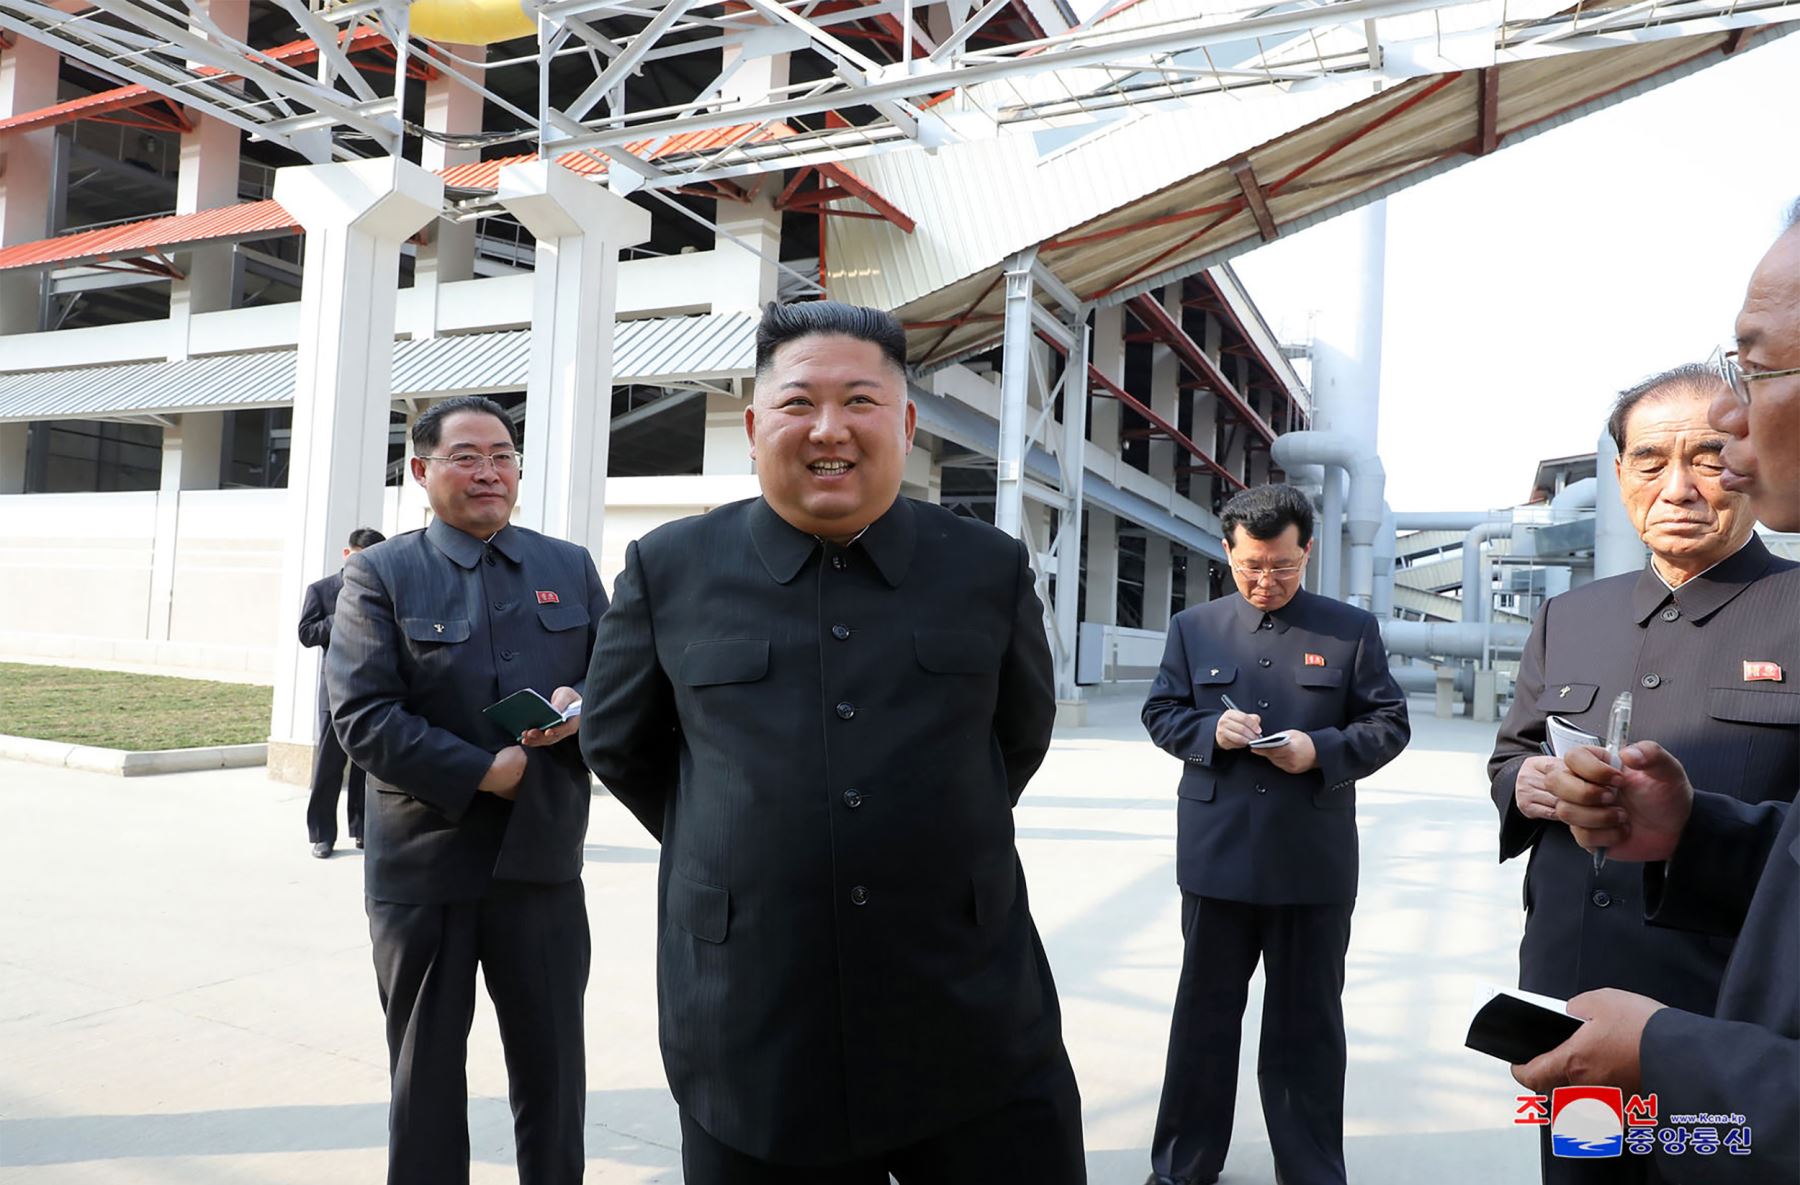 Kim Jong-un "asistió a la ceremonia" y "todos los participantes gritaron 